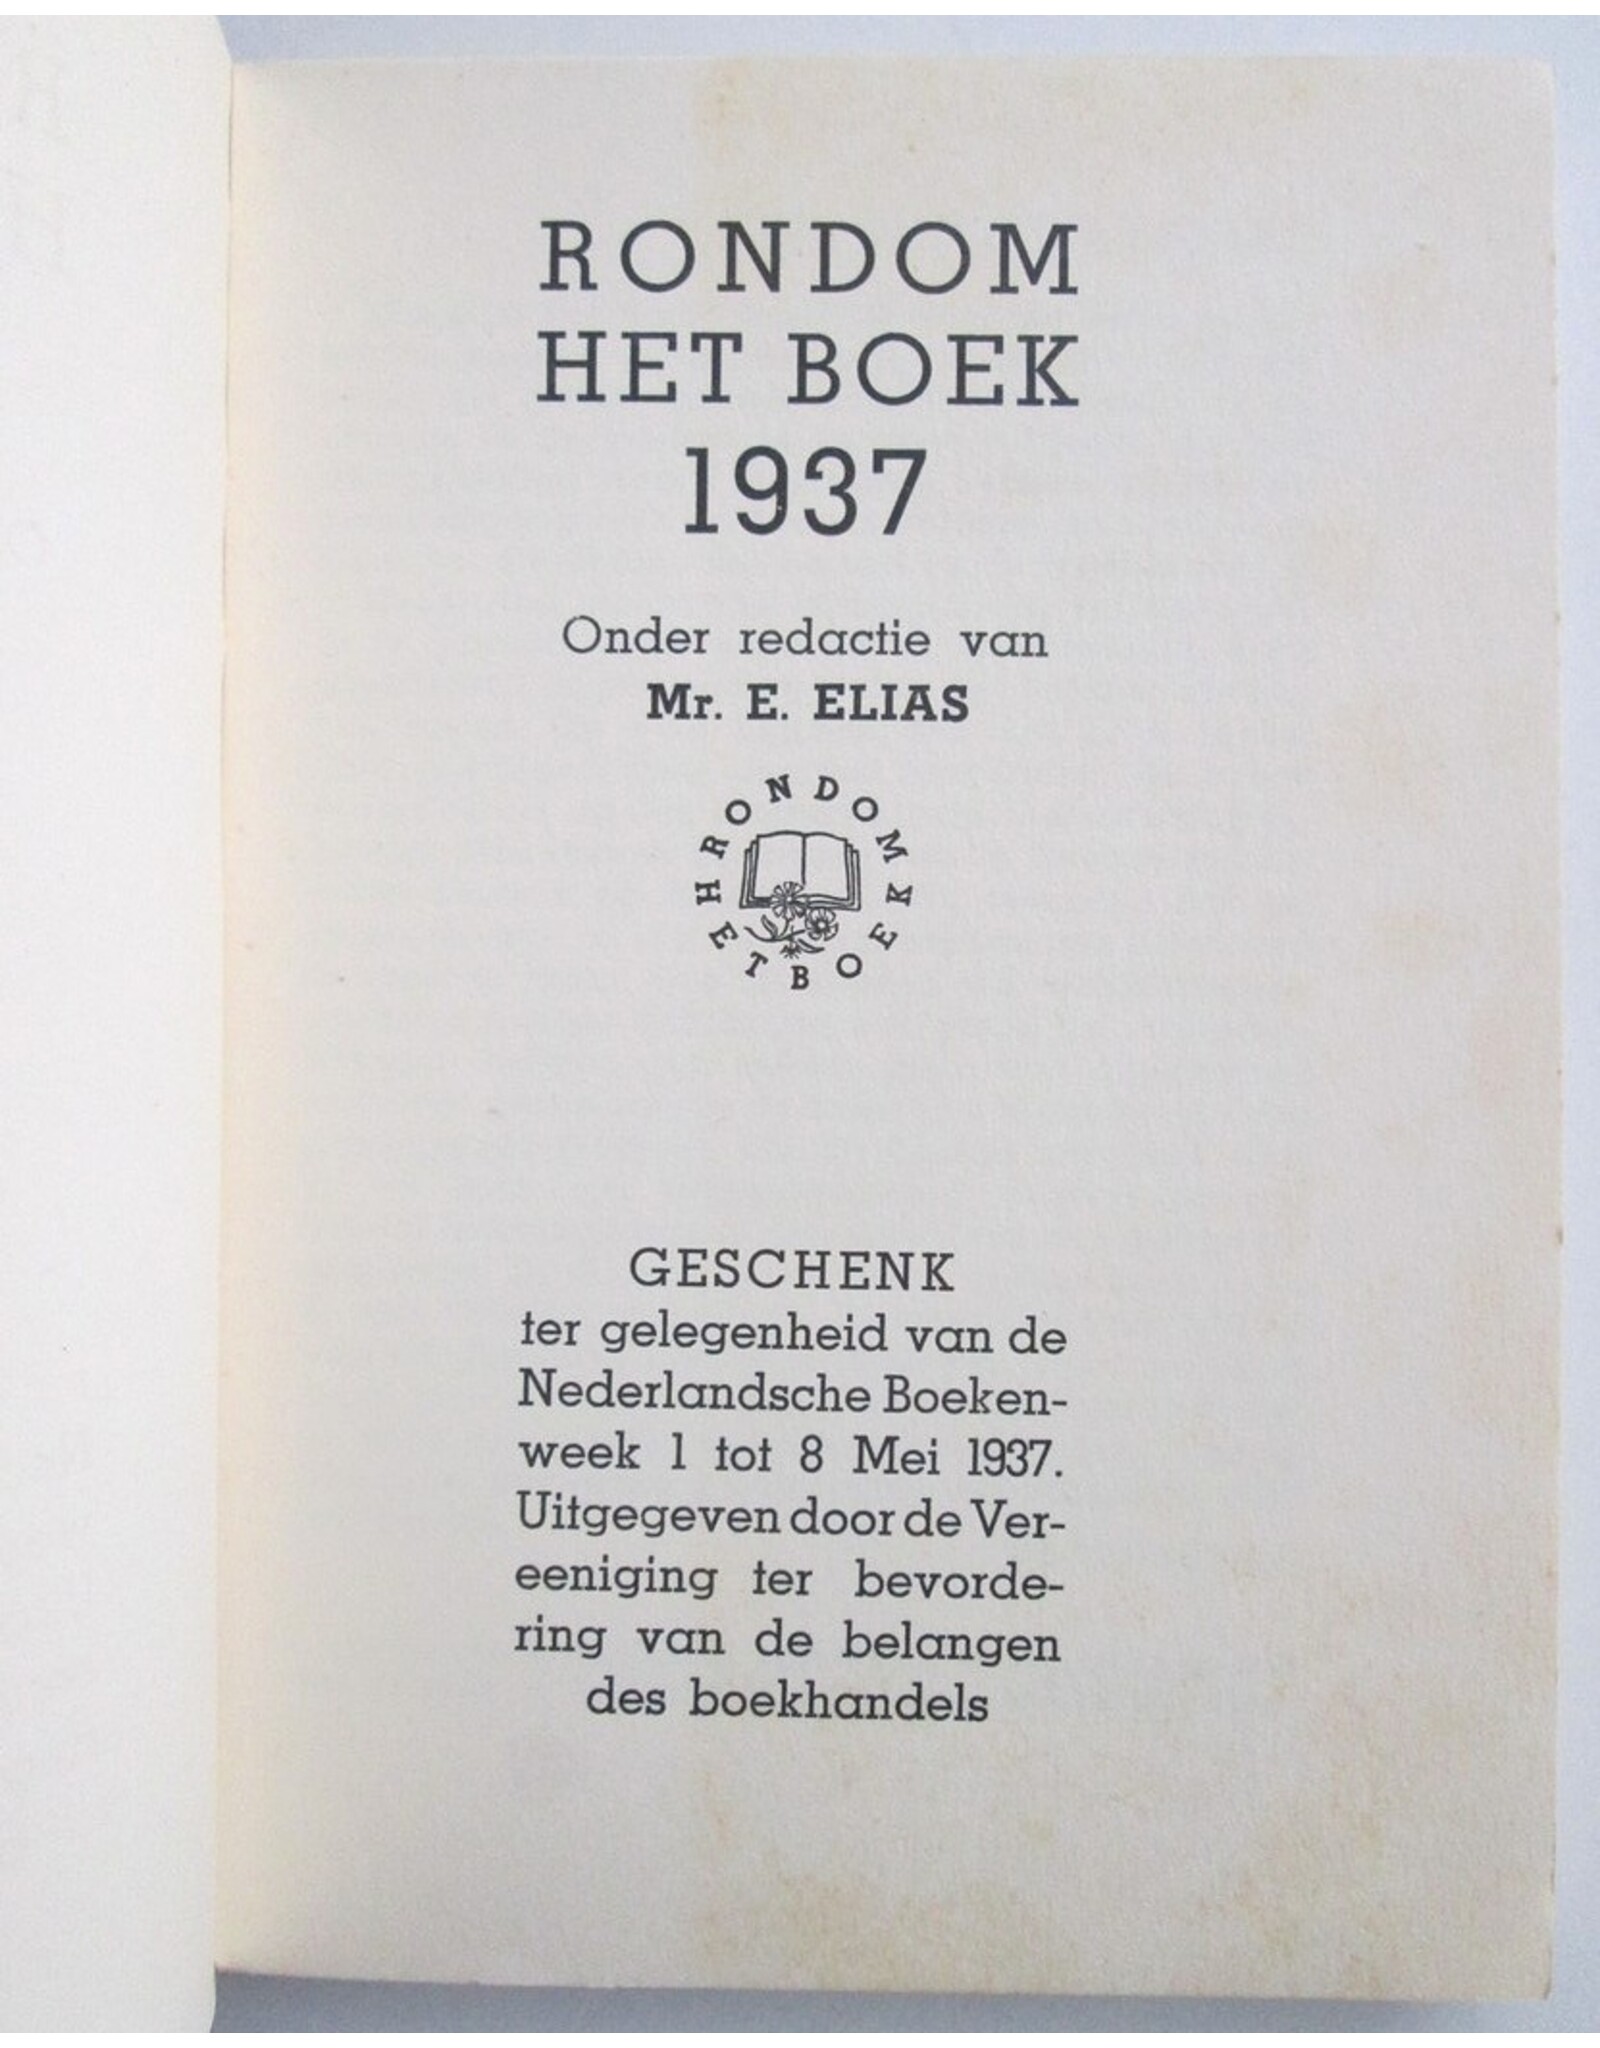 Mr. E. Elias - Rondom het boek 1937: Geschenk ter gelegenheid van de Nederlandsche Boekenweek